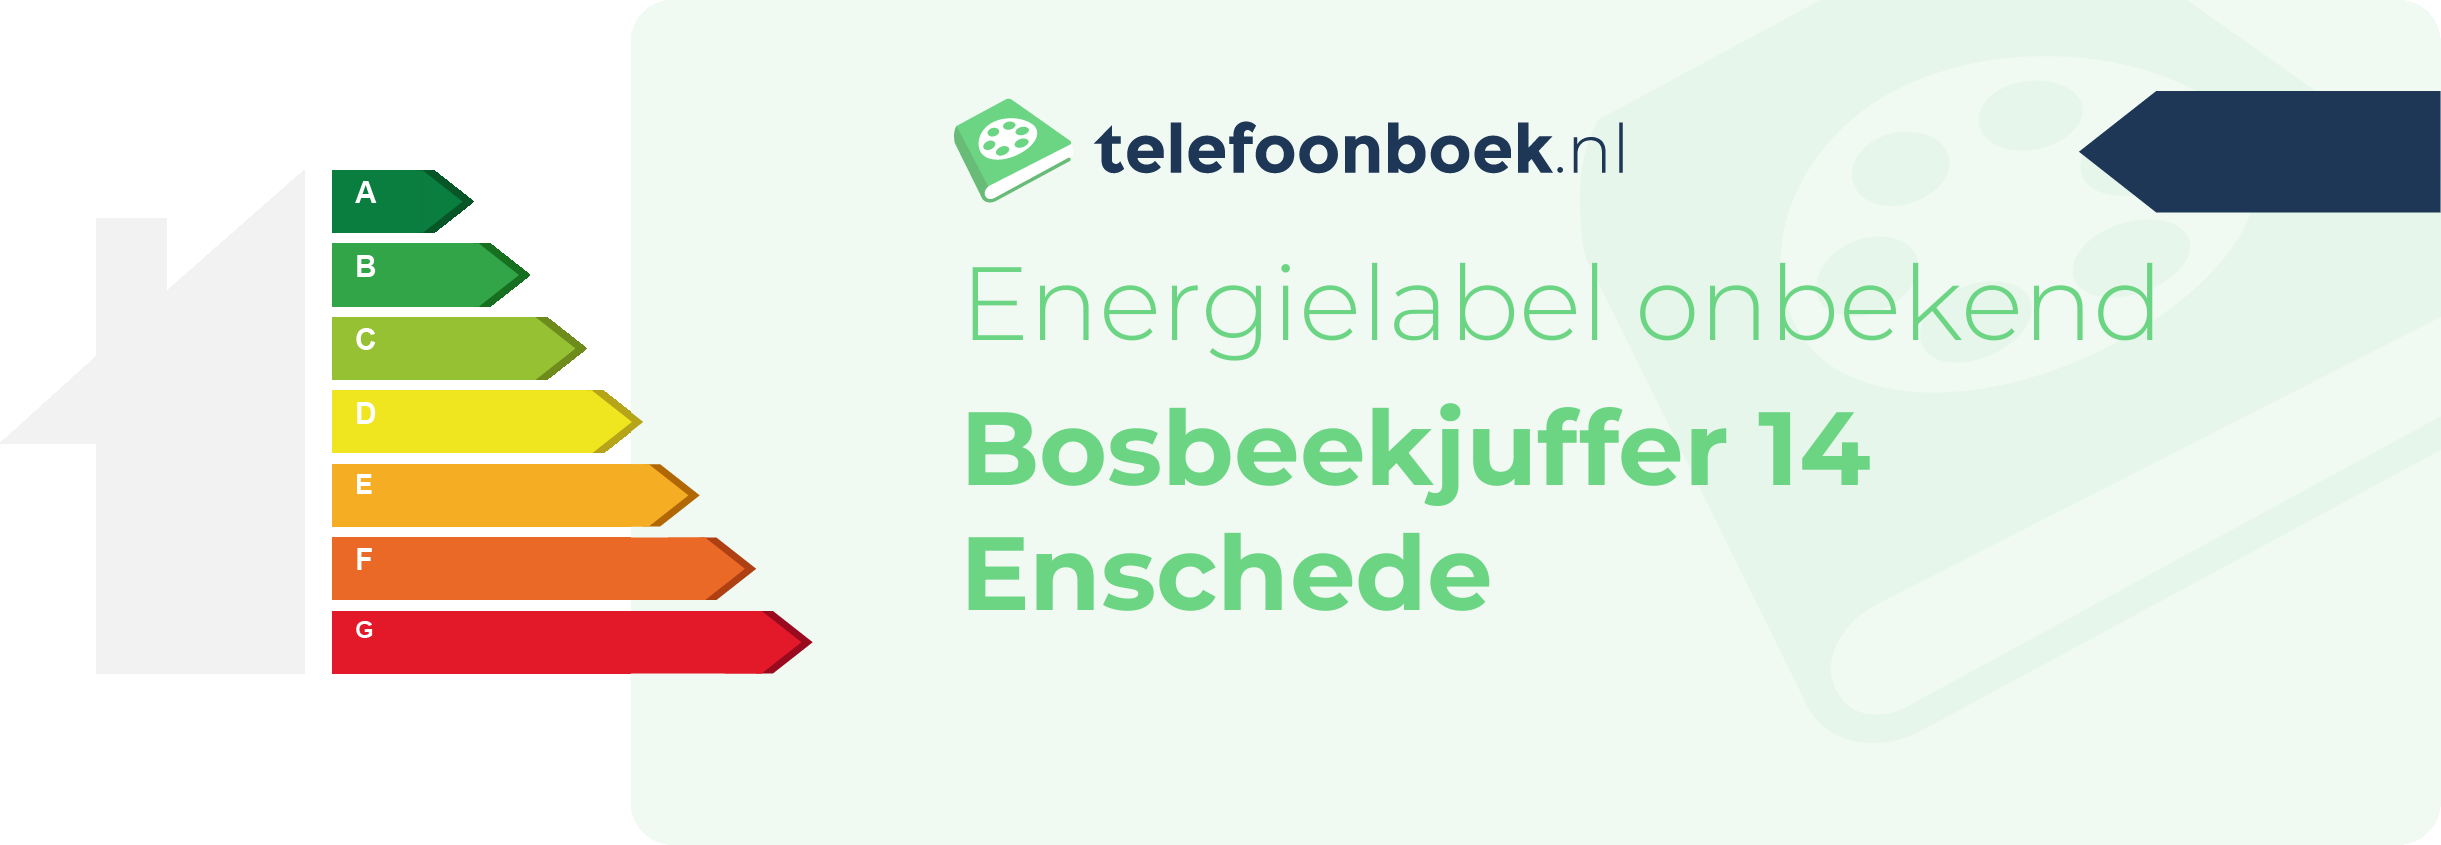 Energielabel Bosbeekjuffer 14 Enschede